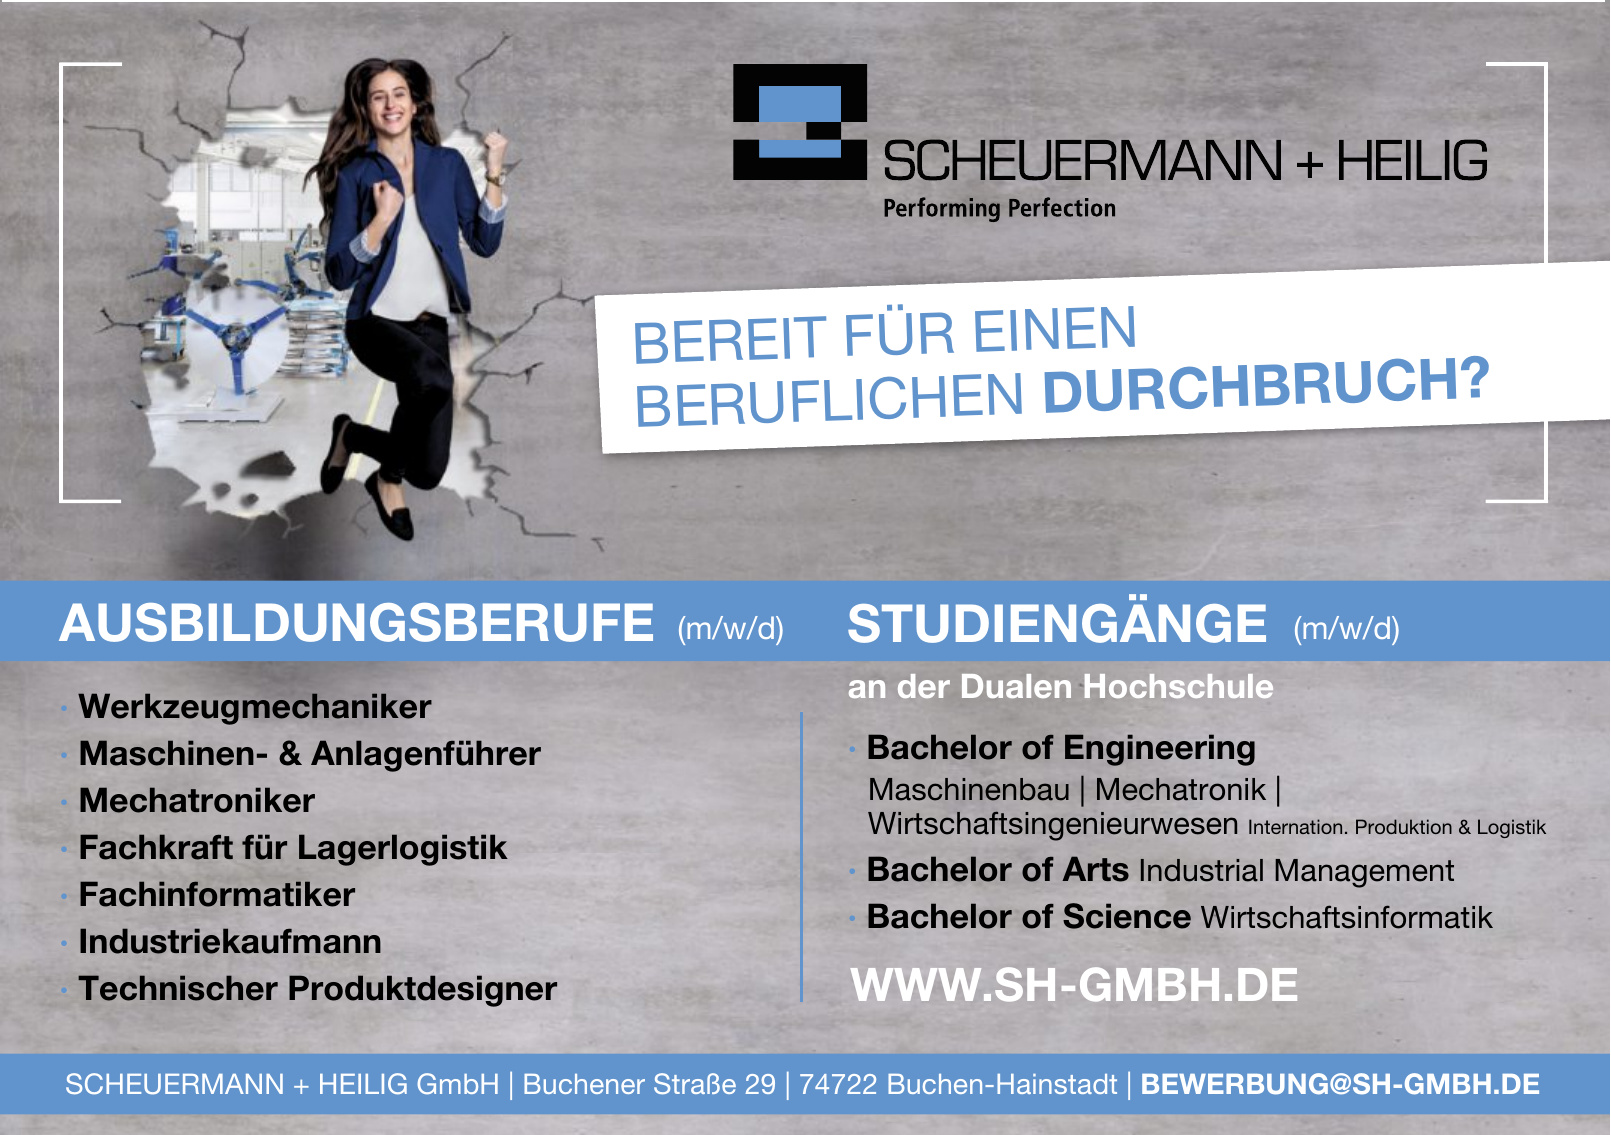 Scheuermann + Heilig GmbH